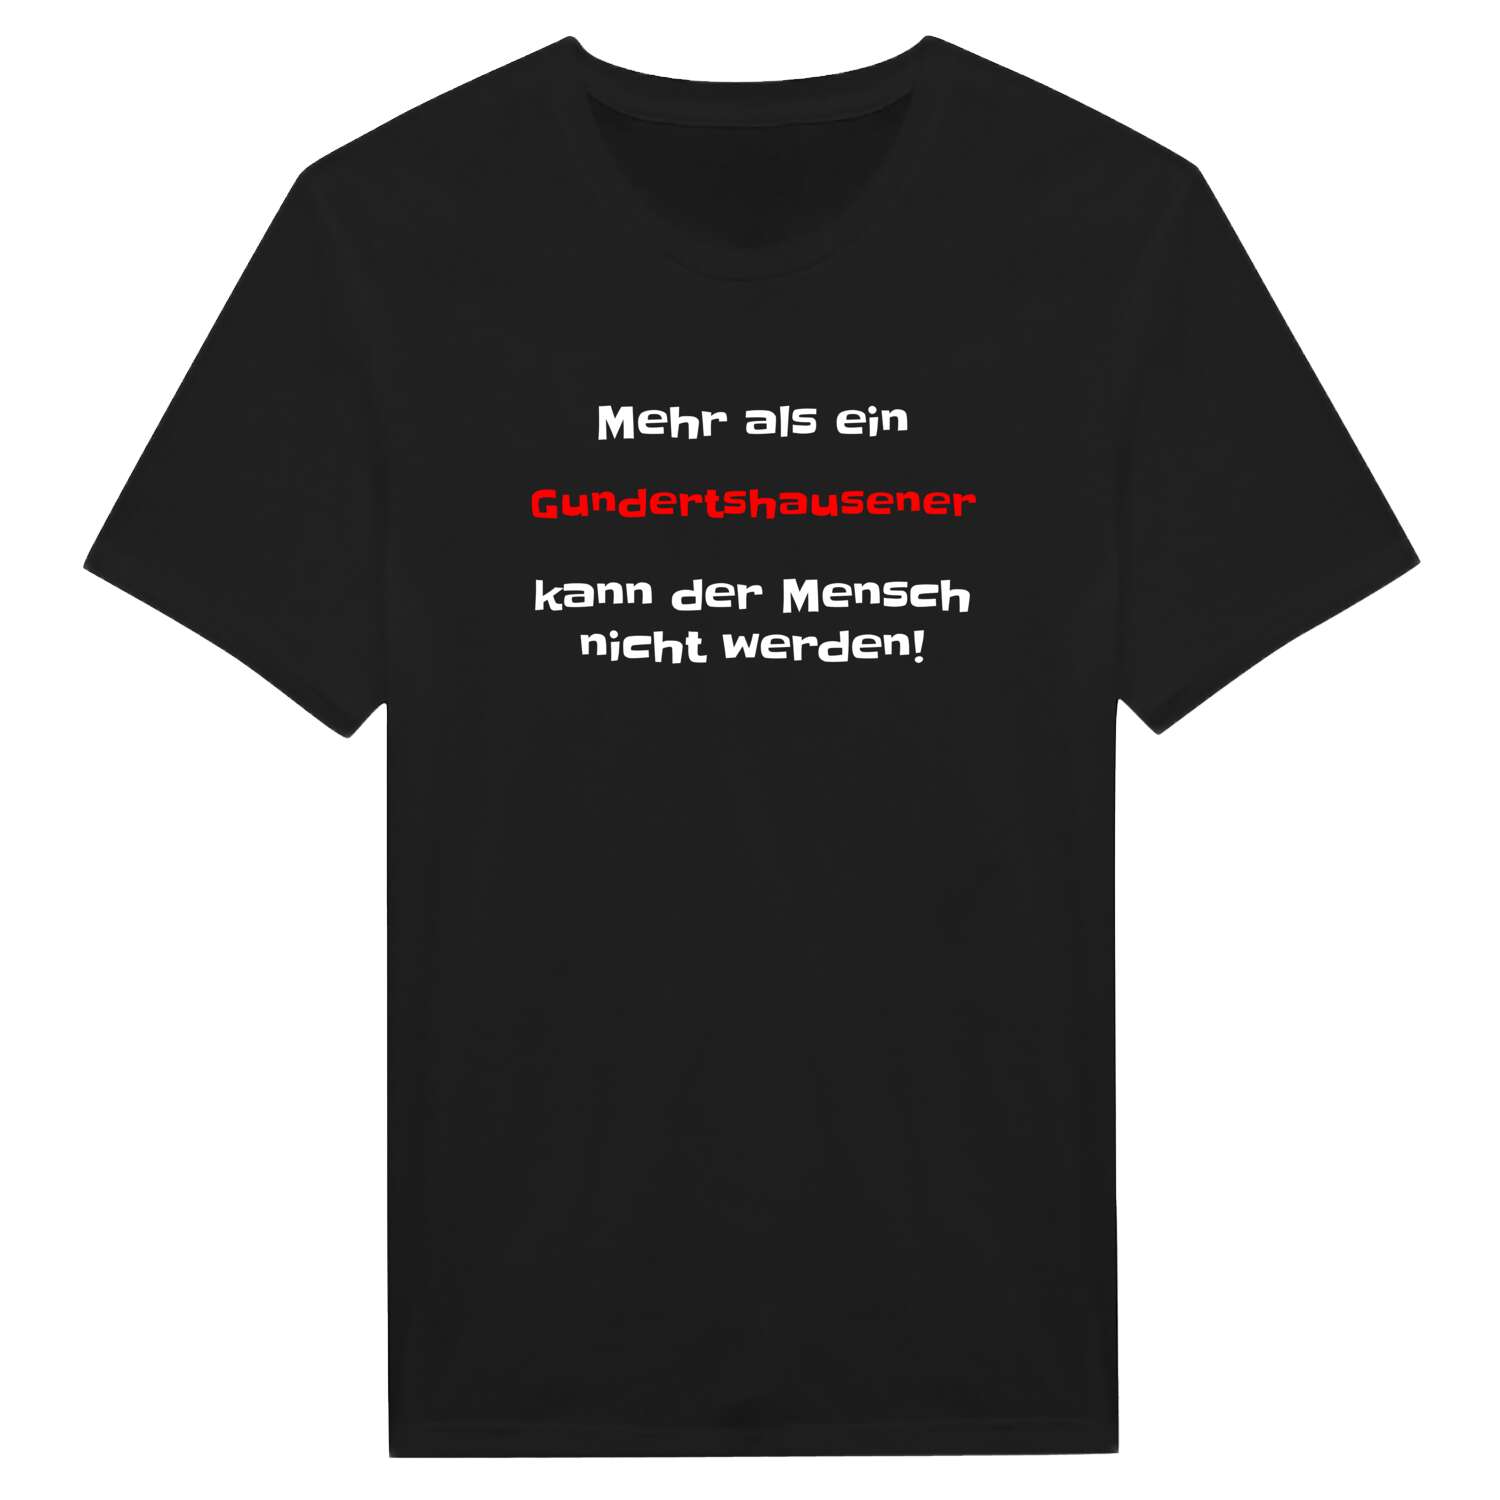 Gundertshausen T-Shirt »Mehr als ein«